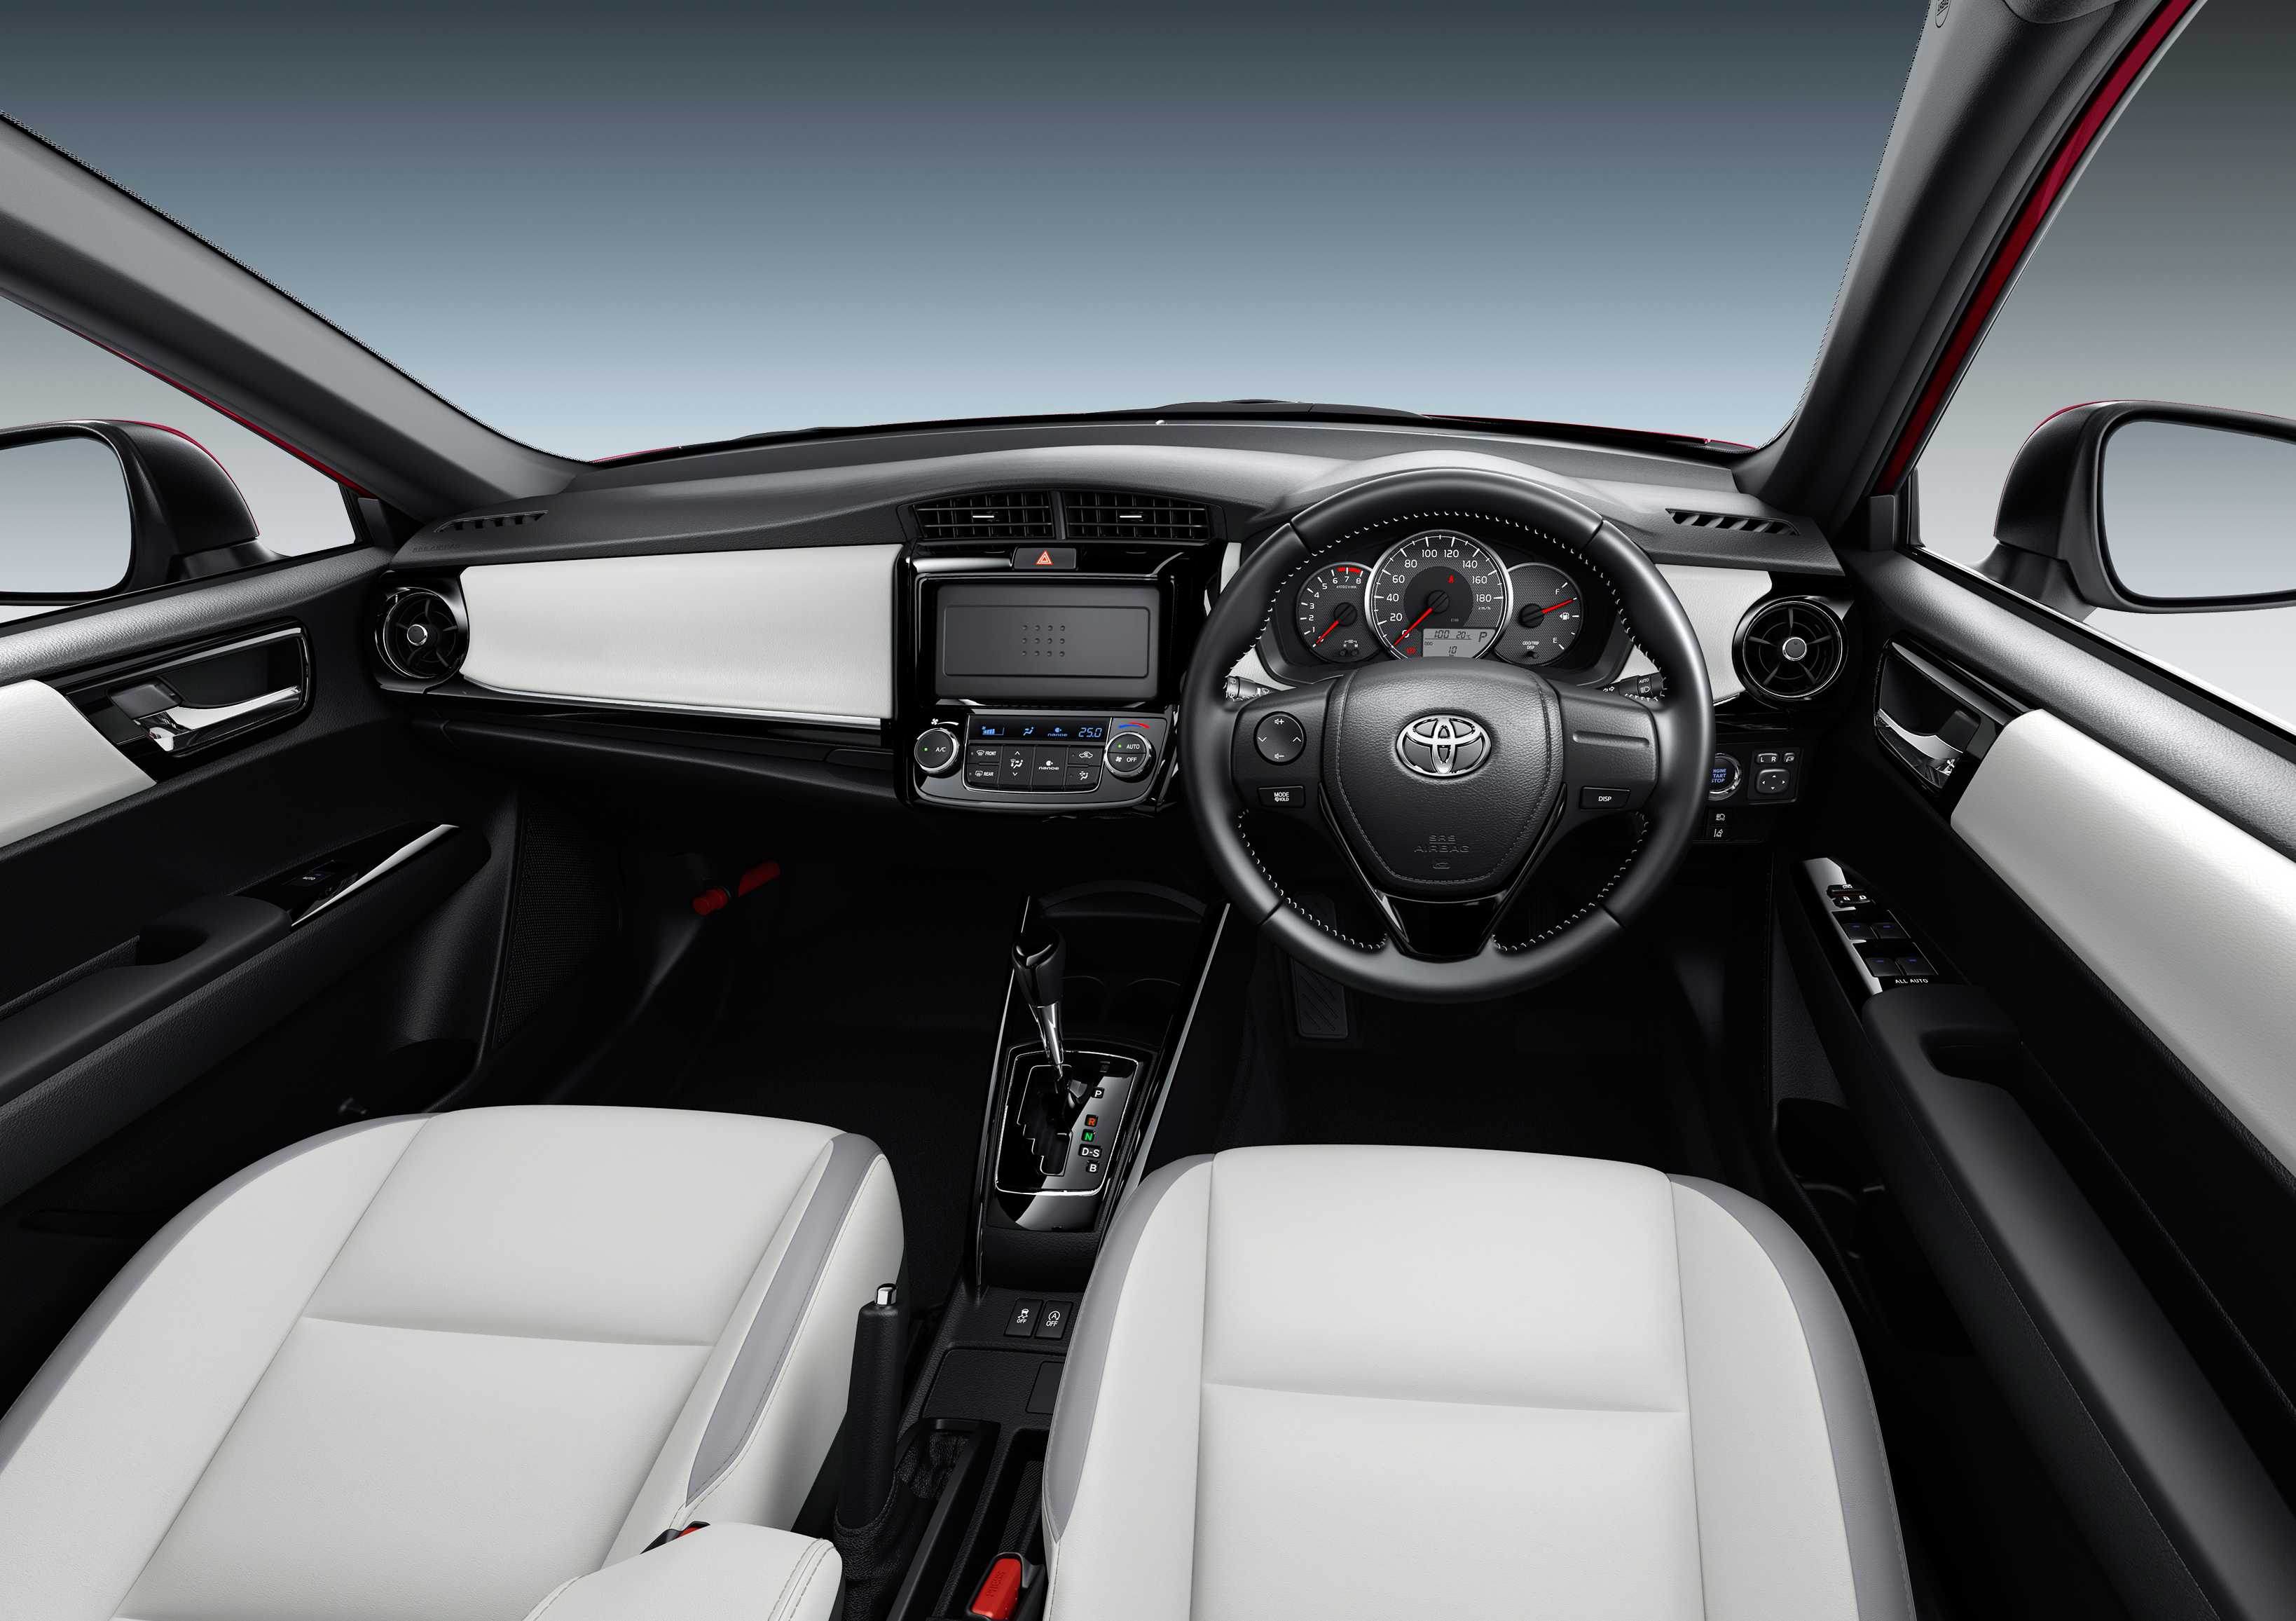 Toyota Fielder interior - Cockpit